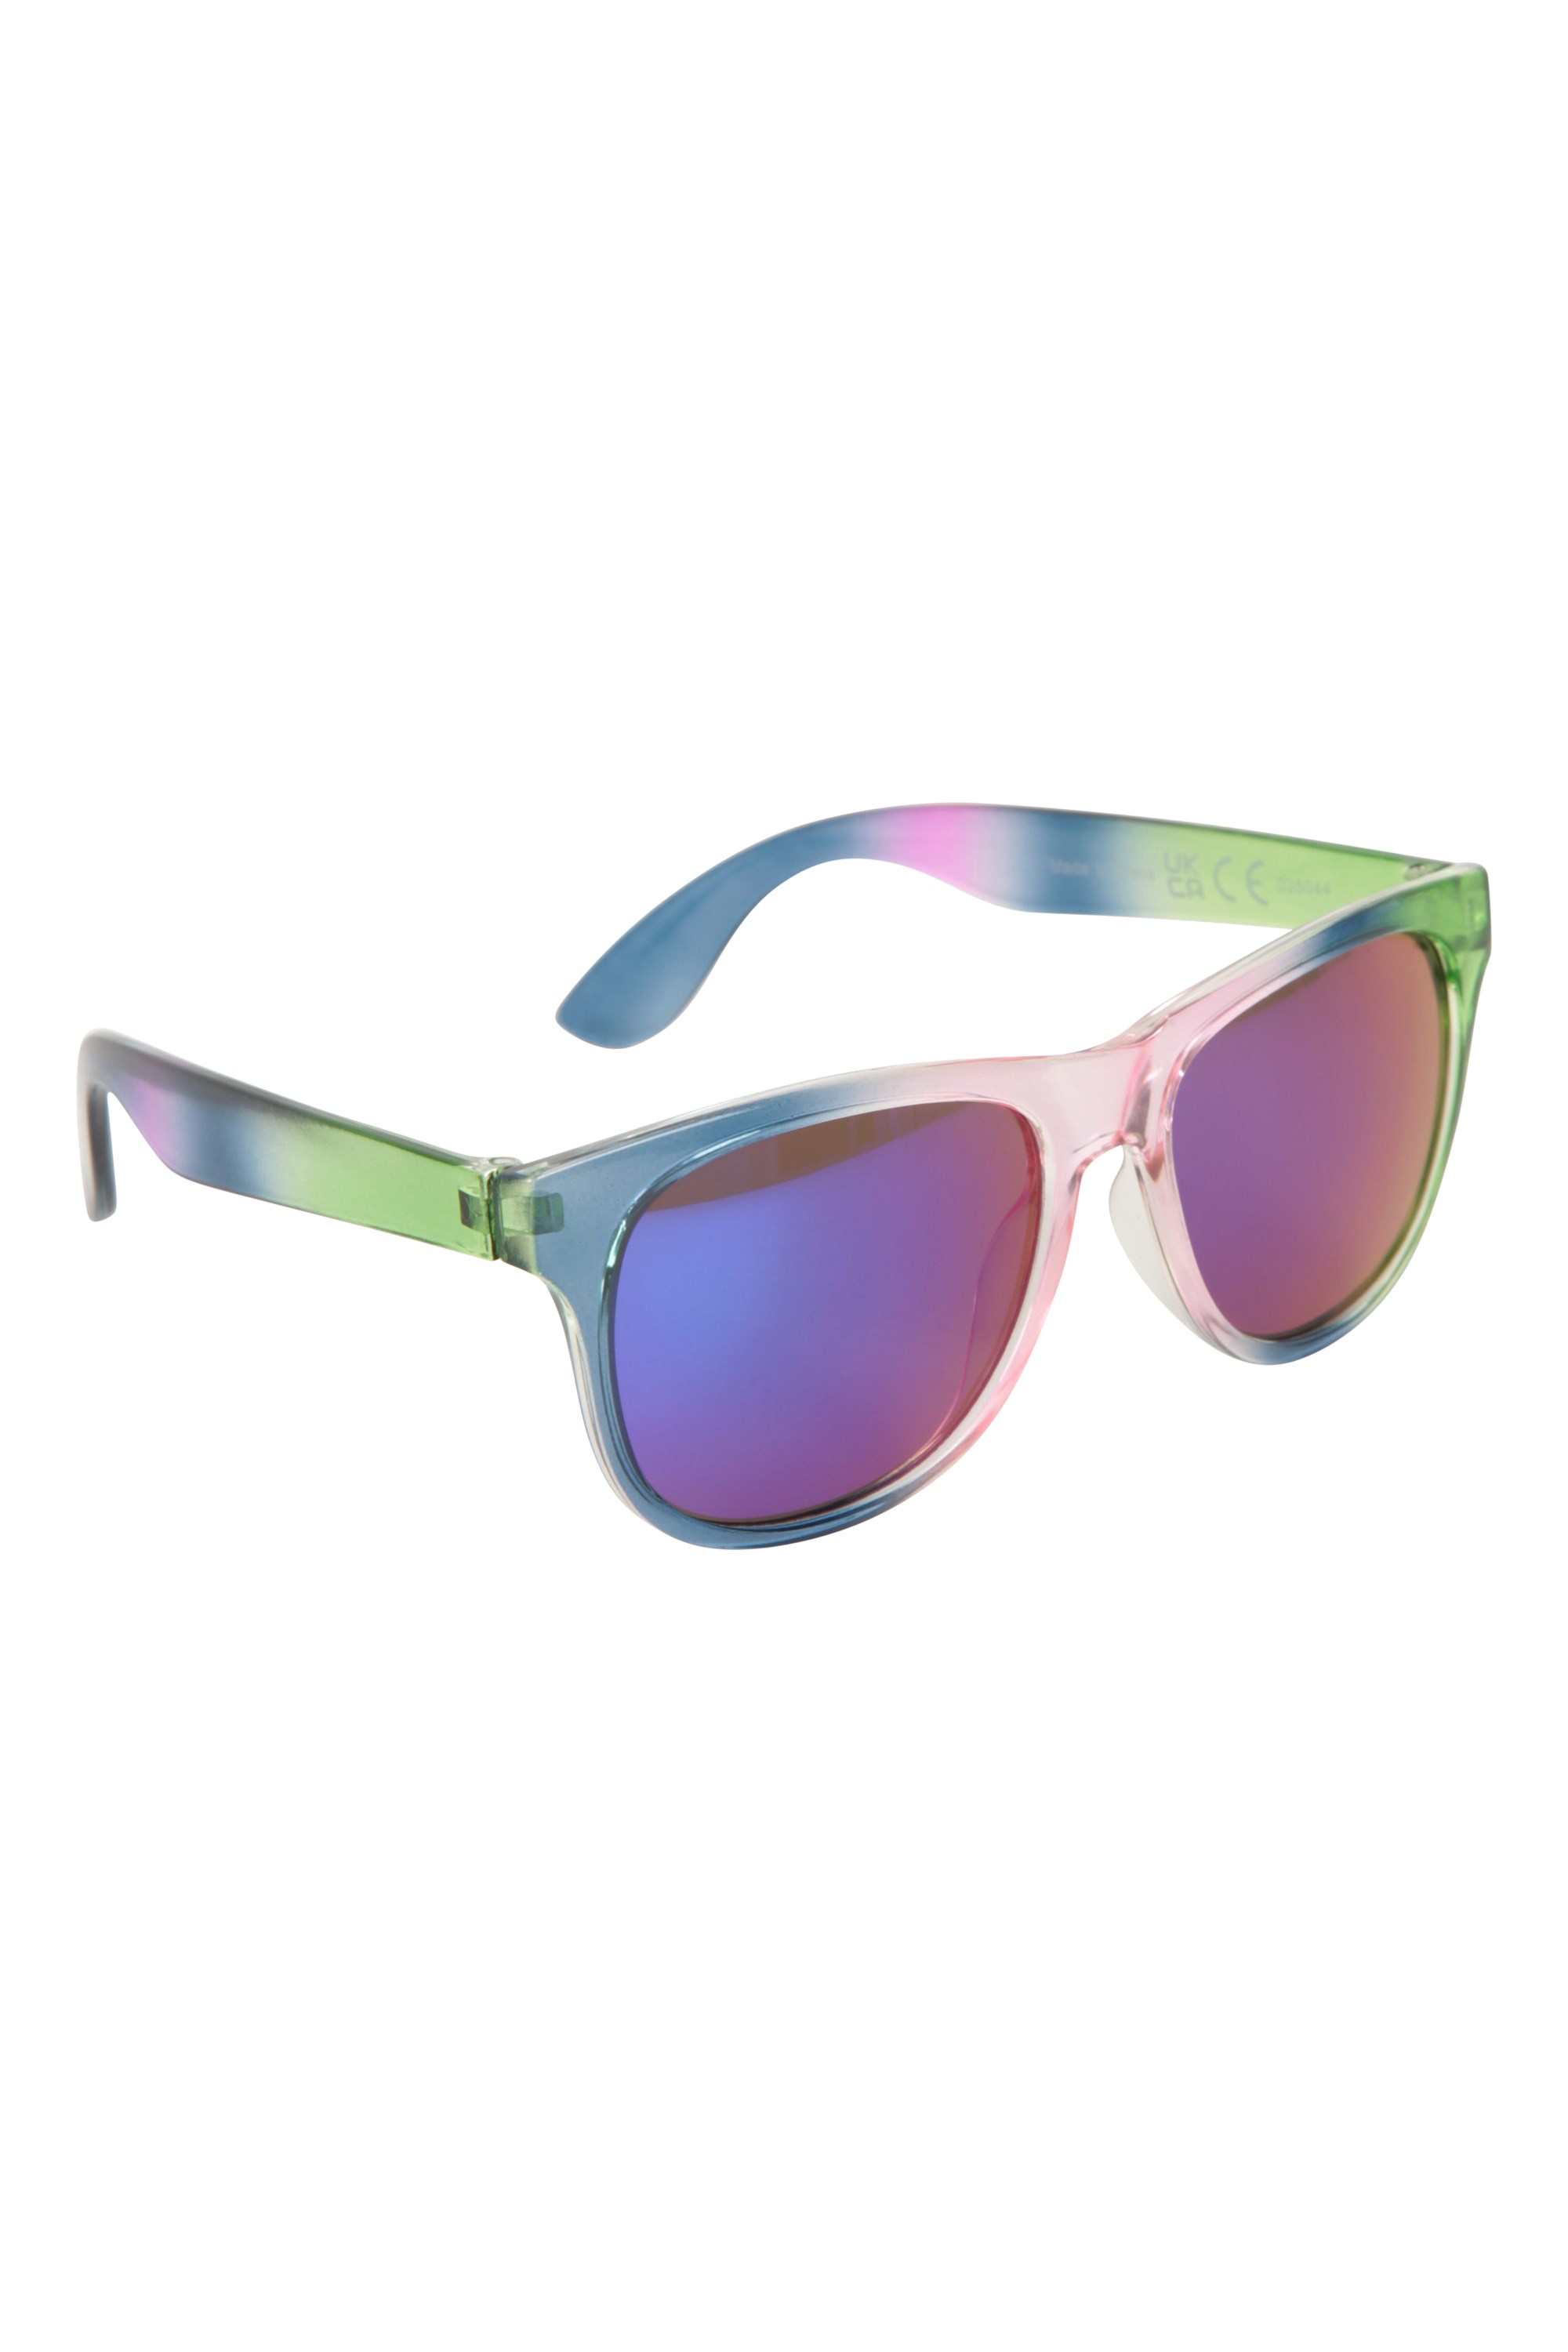 Summerleaze Kids Sunglasses - Green